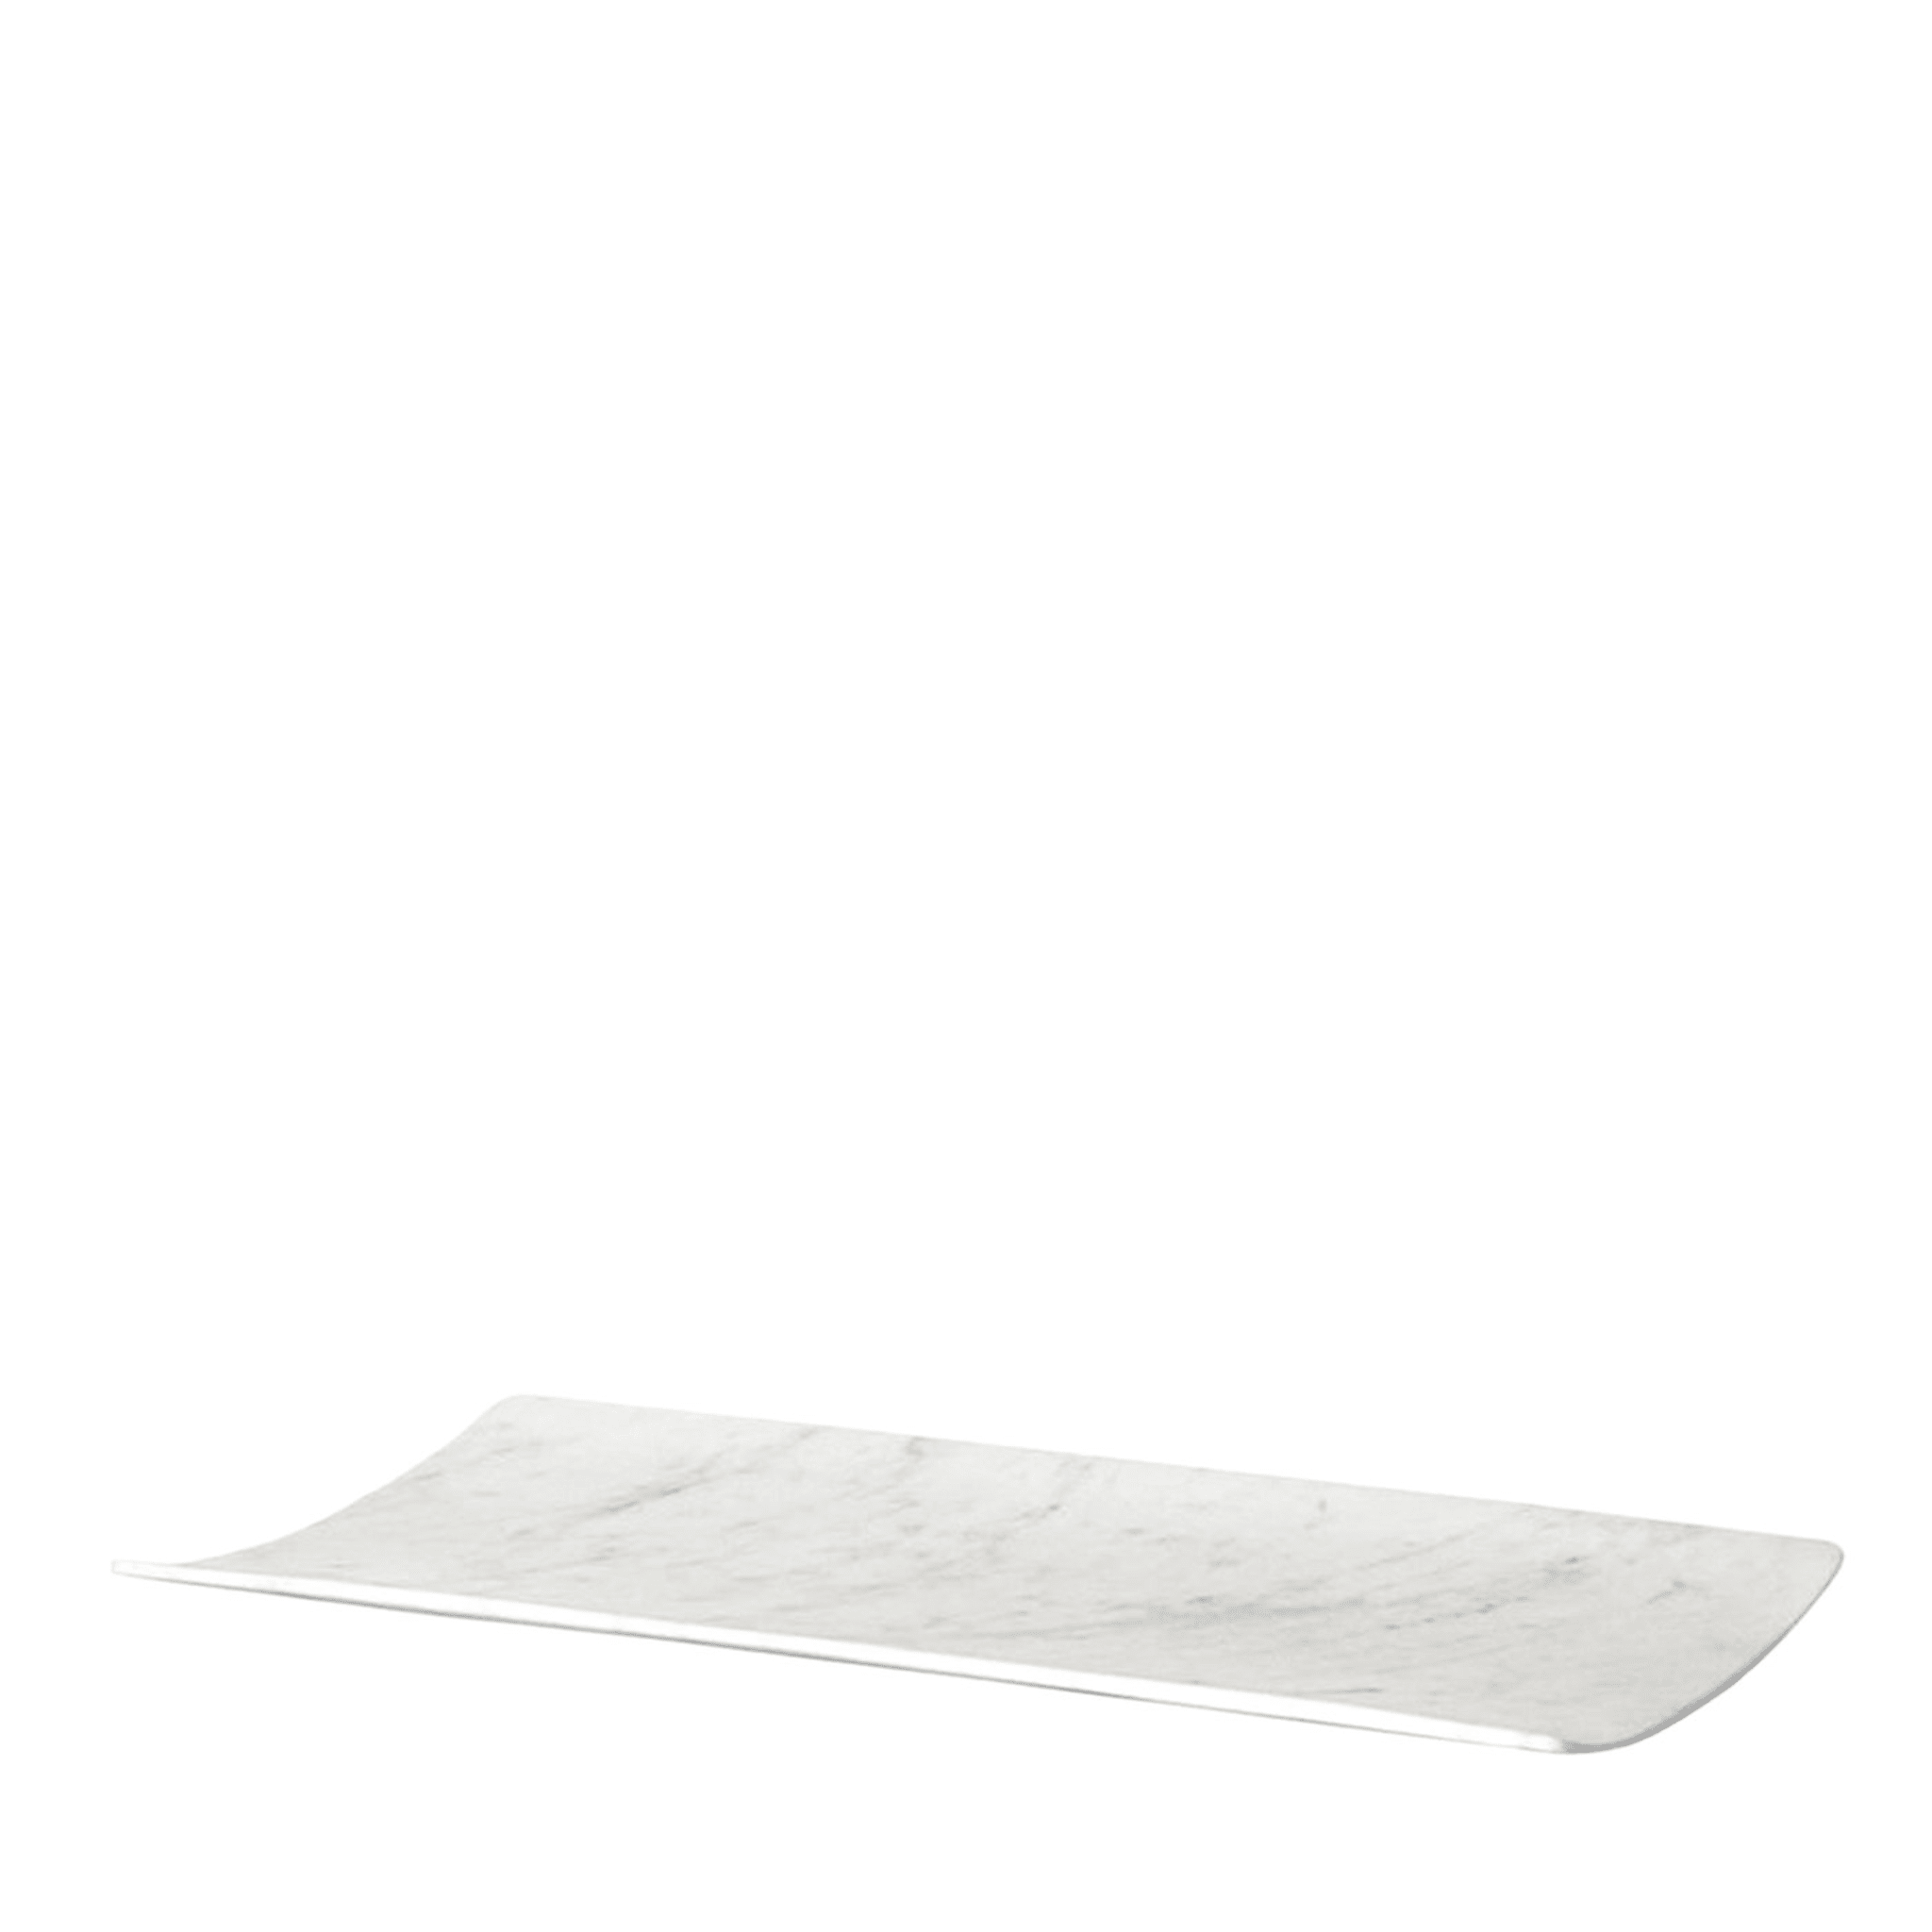 Curvati großes Tablett aus weißem Carrara von Studioformart - Hauptansicht